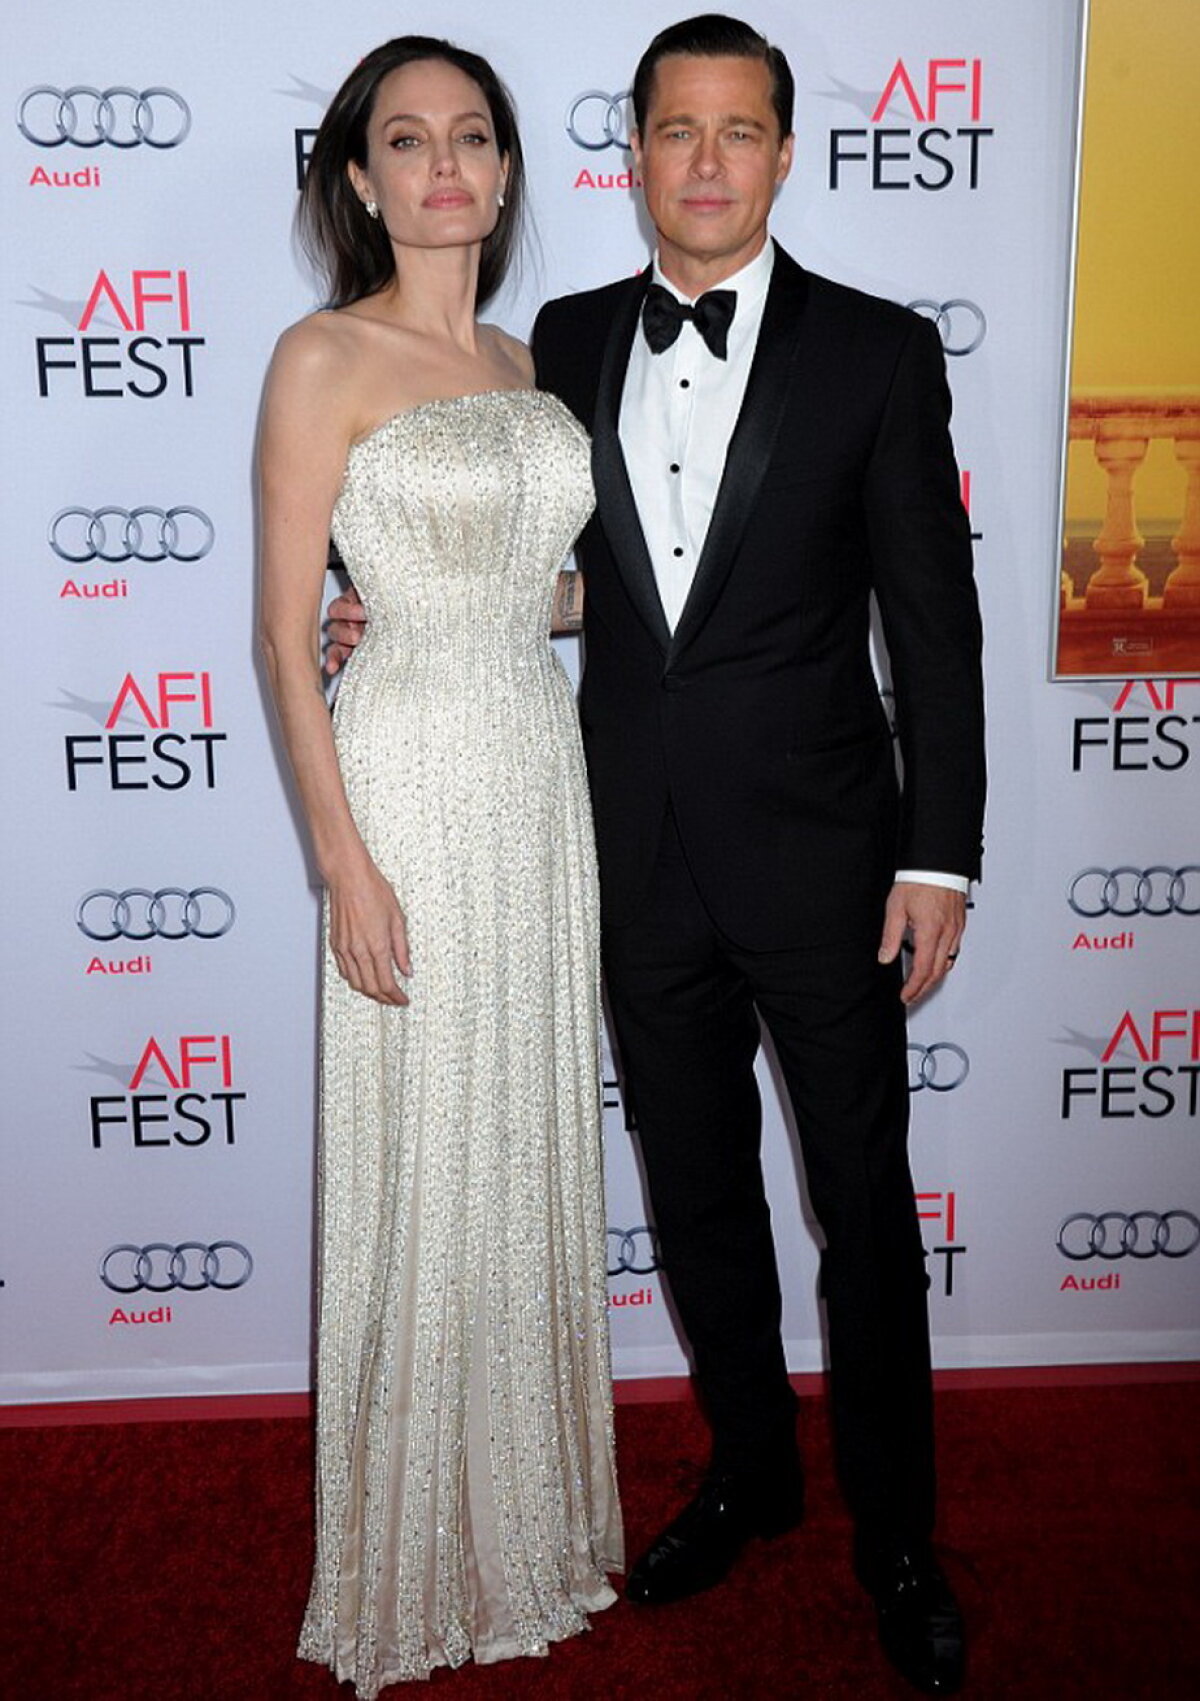 Toată presa specula că vor divorța, dar Angelina și Brad sunt mai uniți ca niciodată